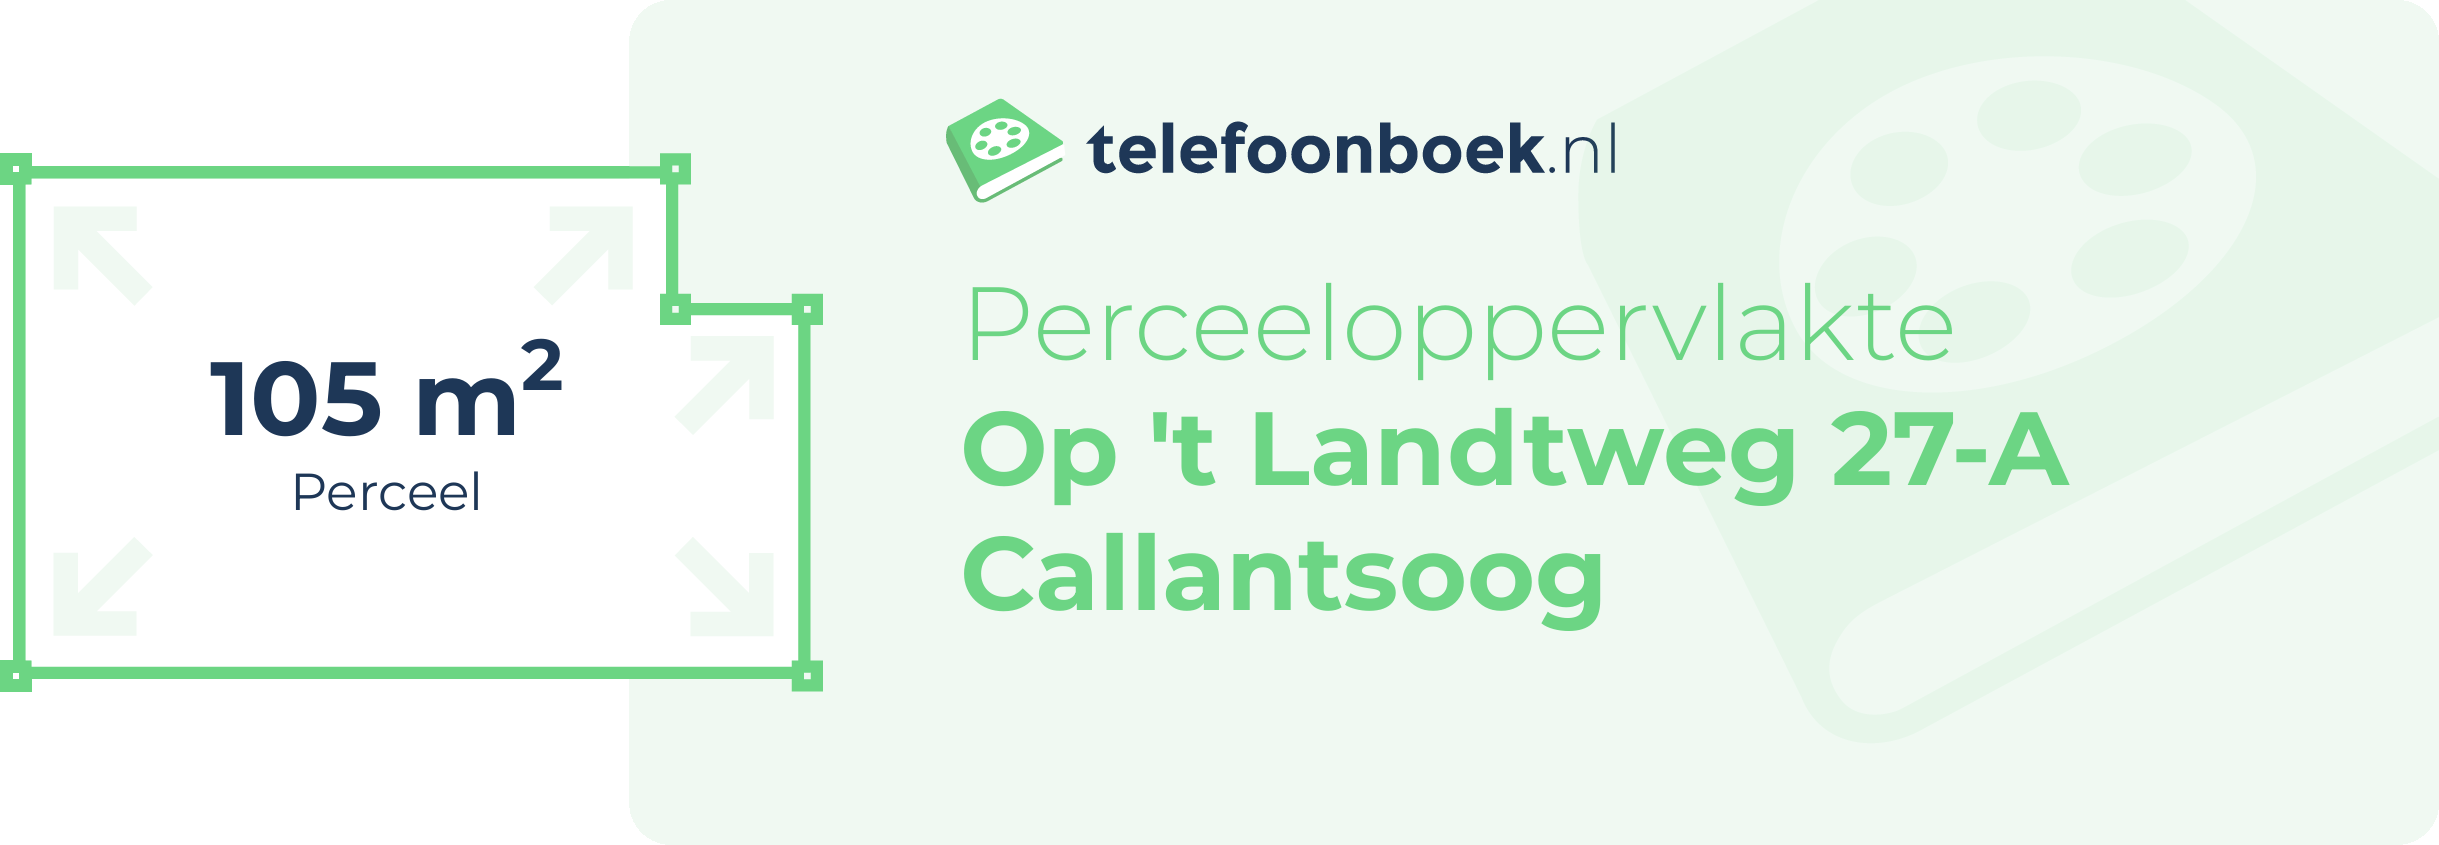 Perceeloppervlakte Op 't Landtweg 27-A Callantsoog